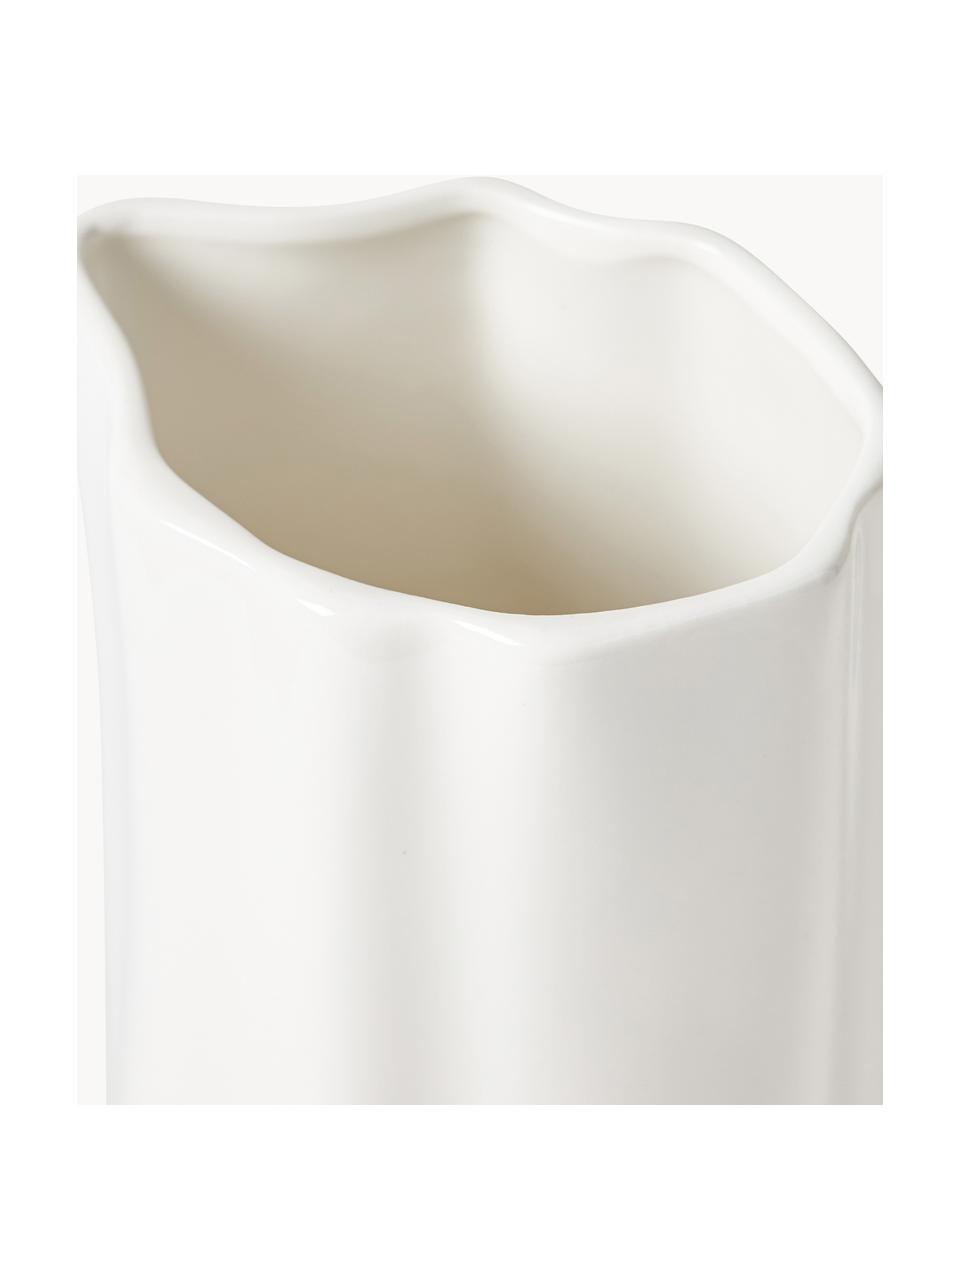 Carafe à eau en porcelaine de forme organique Joana, 1,6 L, Porcelaine, Blanc, 1,6 L